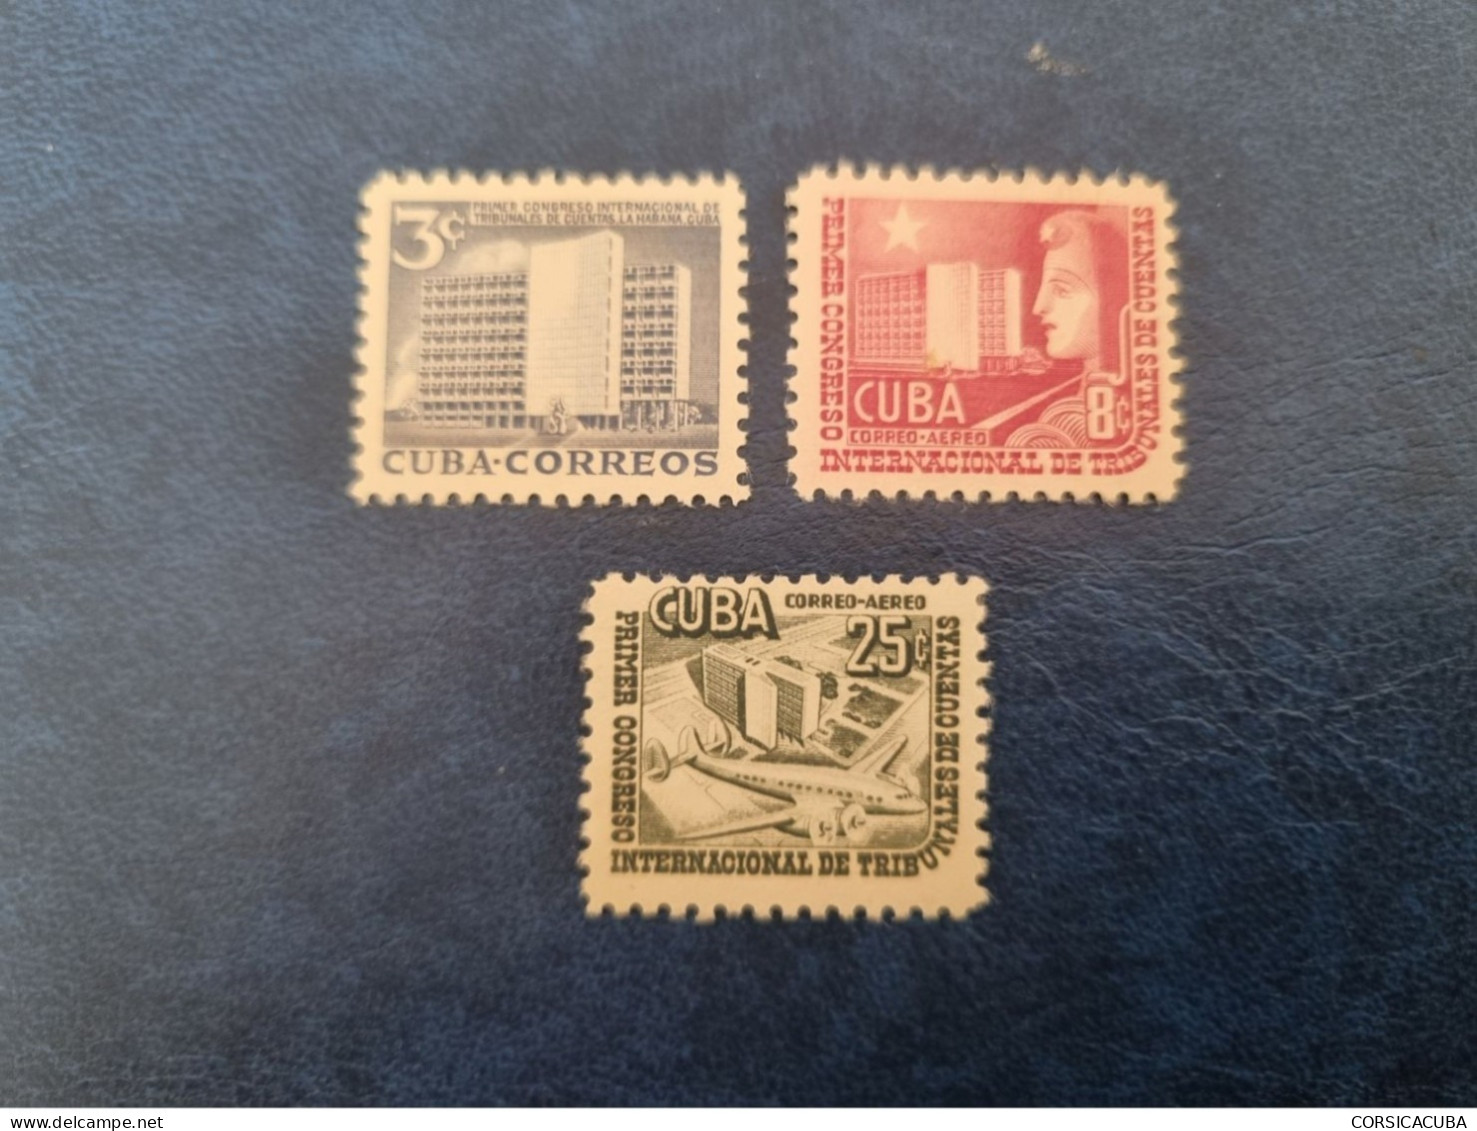 CUBA  NEUF  1953   CONGRESO  TRIBUNALES  DE  CUENTAS  //  PARFAIT  ETAT  //  1er  CHOIX  // - Unused Stamps